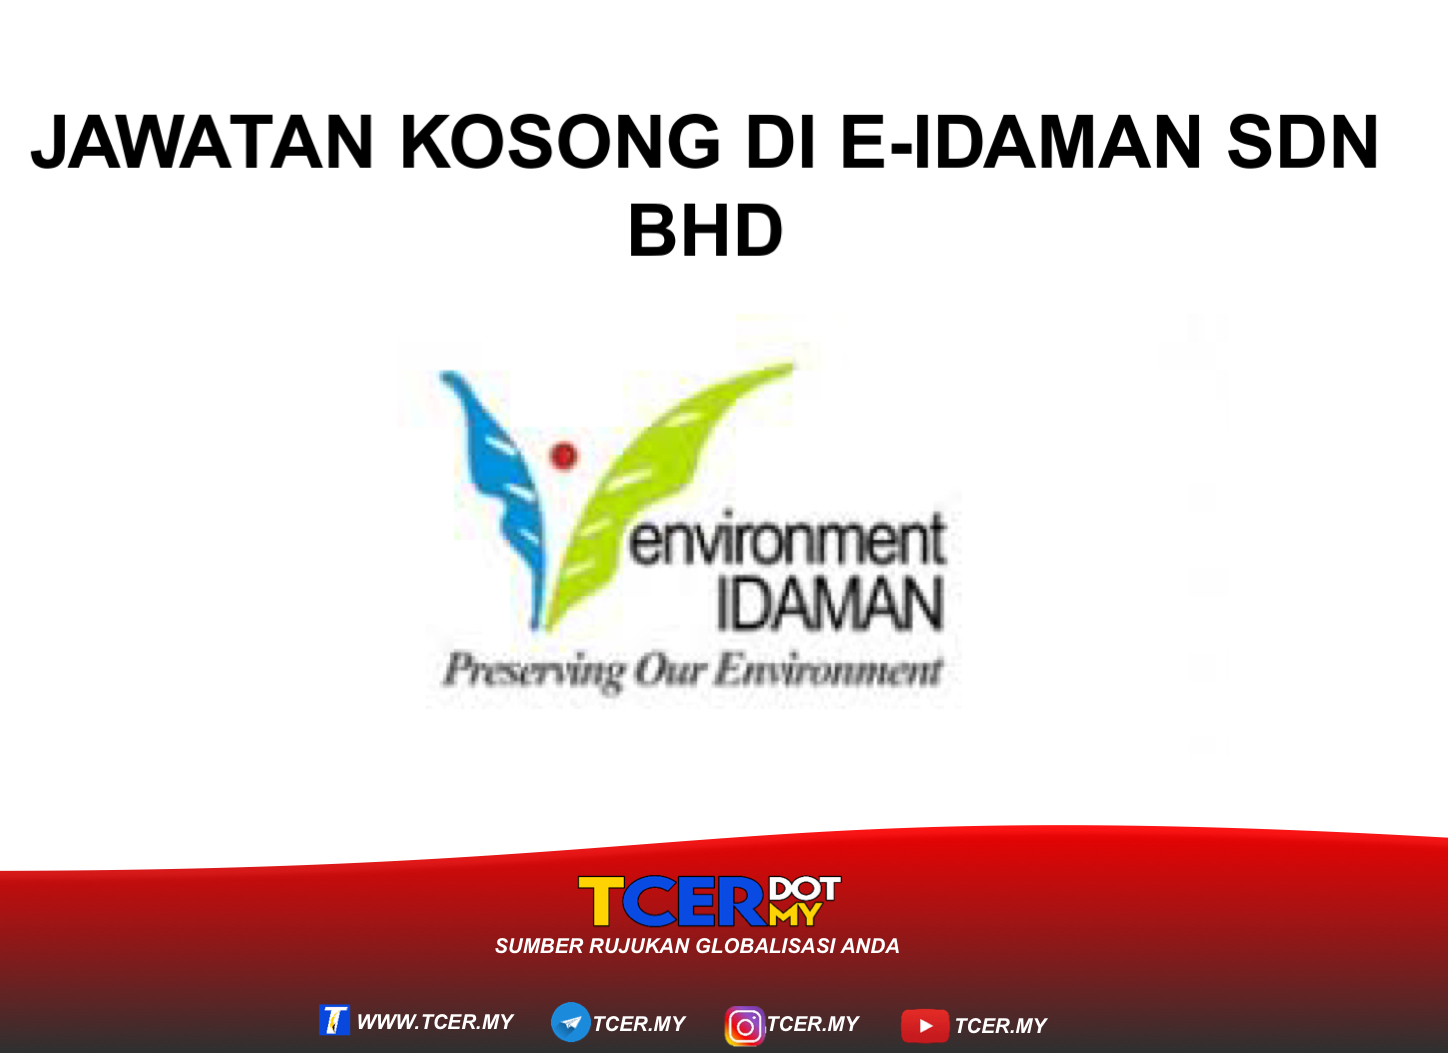 Jawatan Kosong Di E-Idaman Sdn Bhd - TCER.MY